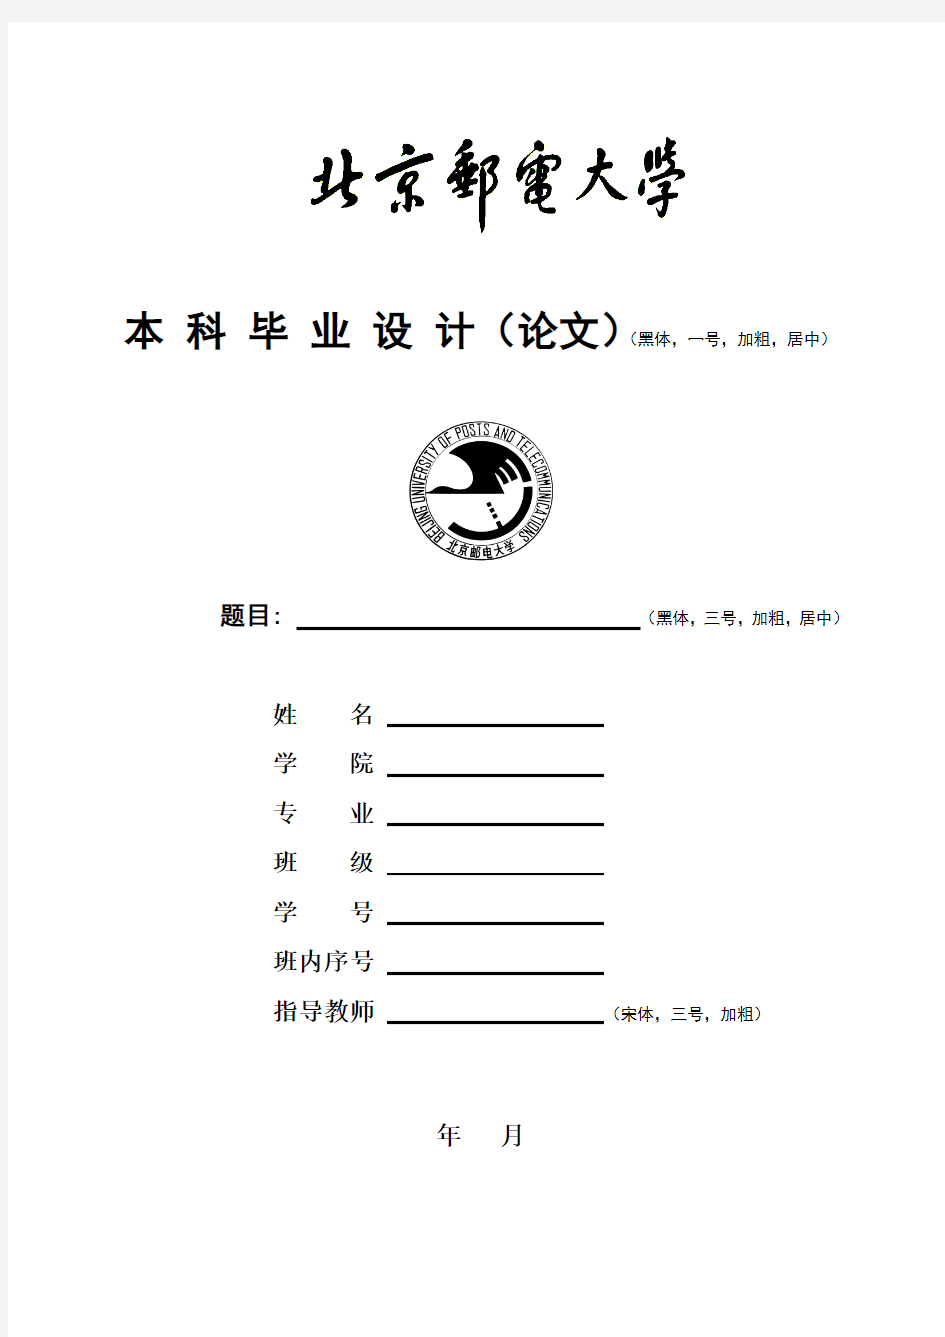 北京邮电大学本科毕业设计(论文)论文封面——模板